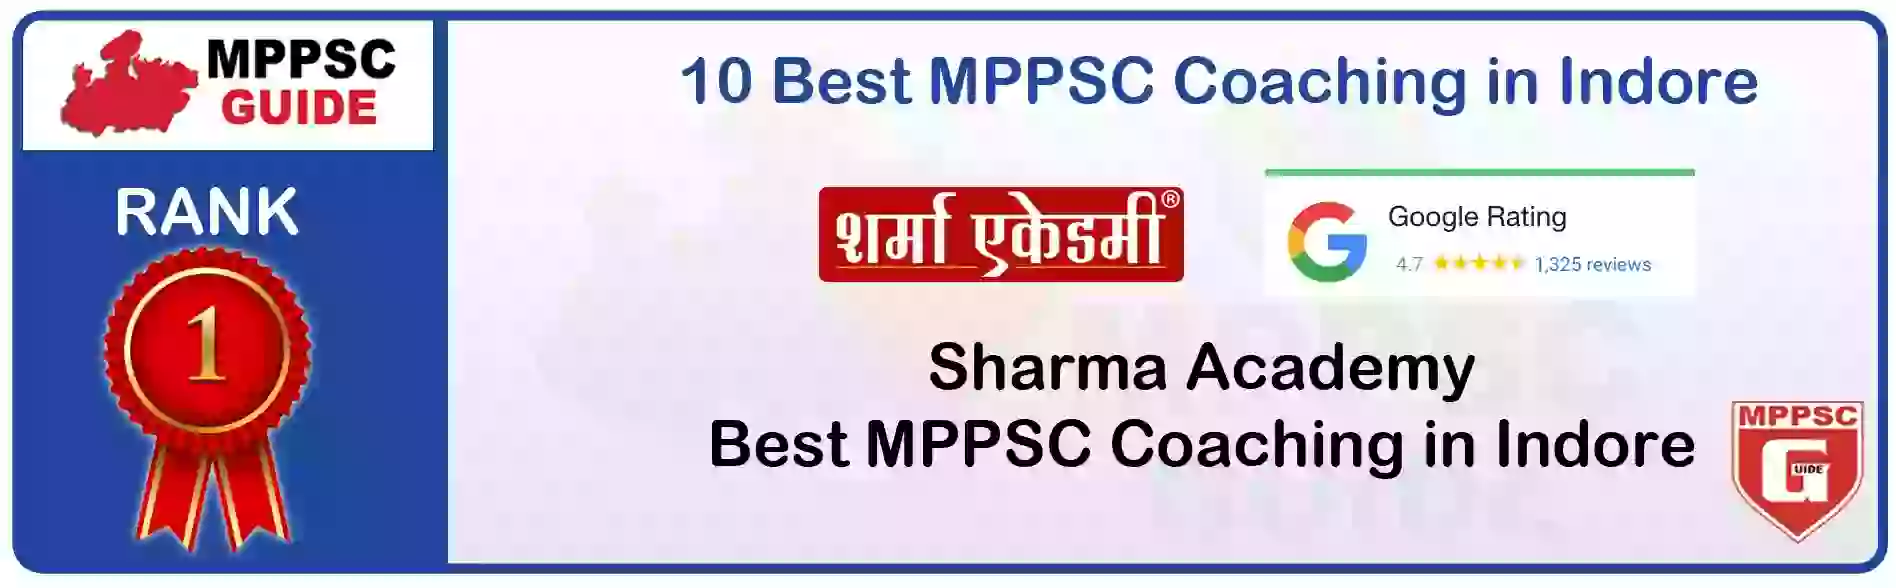 MPPSC Coaching in Mandla, MPPSC Coaching Institute In Mandla, Best MPPSC Coaching in Mandla, Top 10 MPPSC Coaching In Mandla, best mppsc coaching institute in mandla, MPPSC Coaching Classes In Mandla, MPPSC Online Coaching In Mandla, mppsc coaching in Mandla bhanwarkua